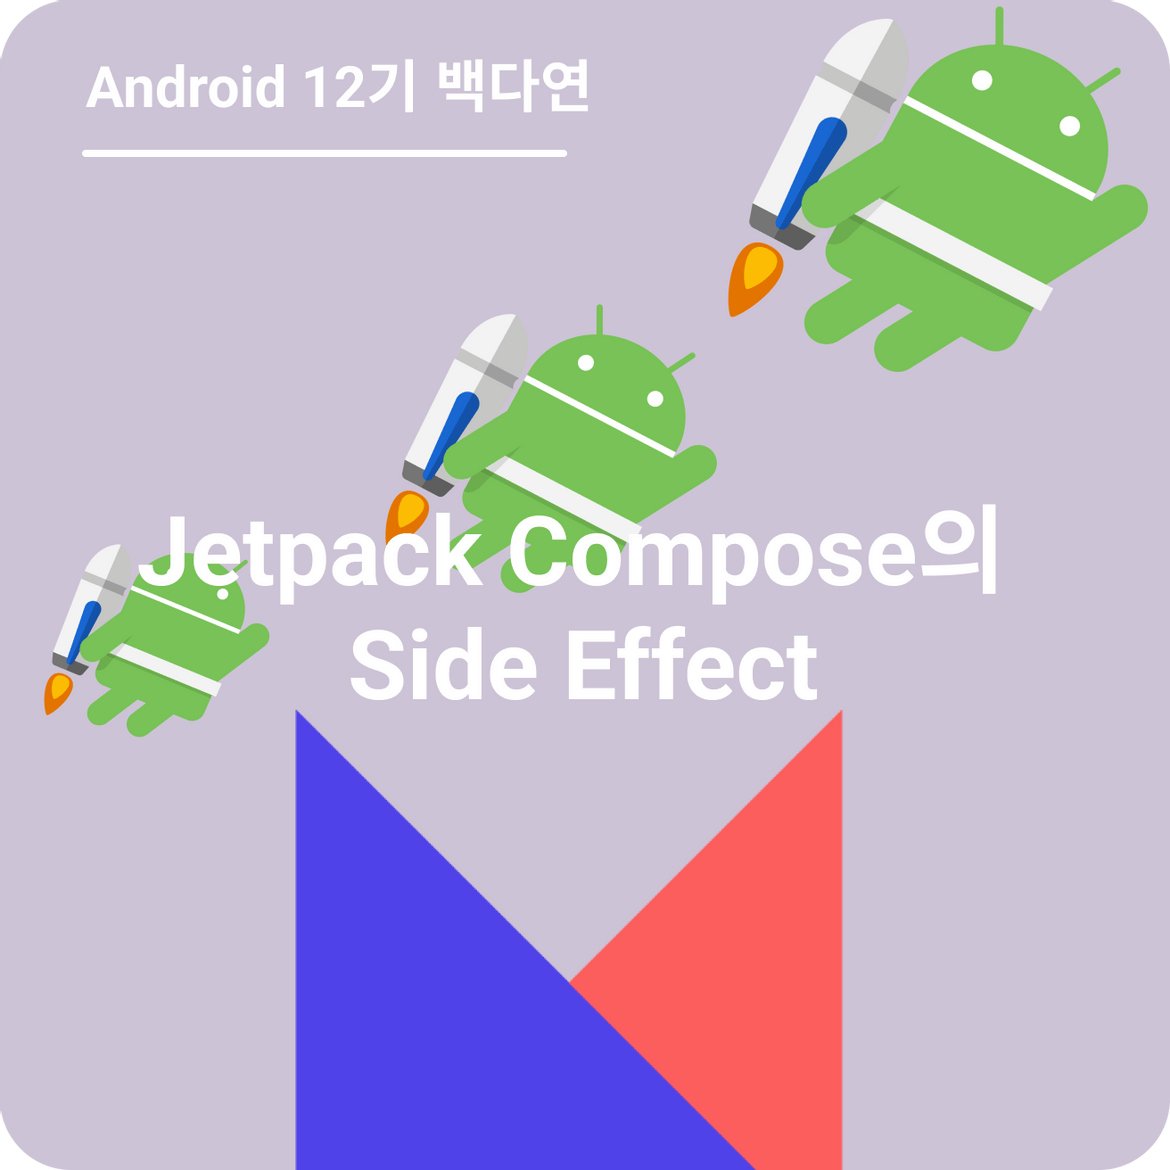 Jetpack Compose Side Effect